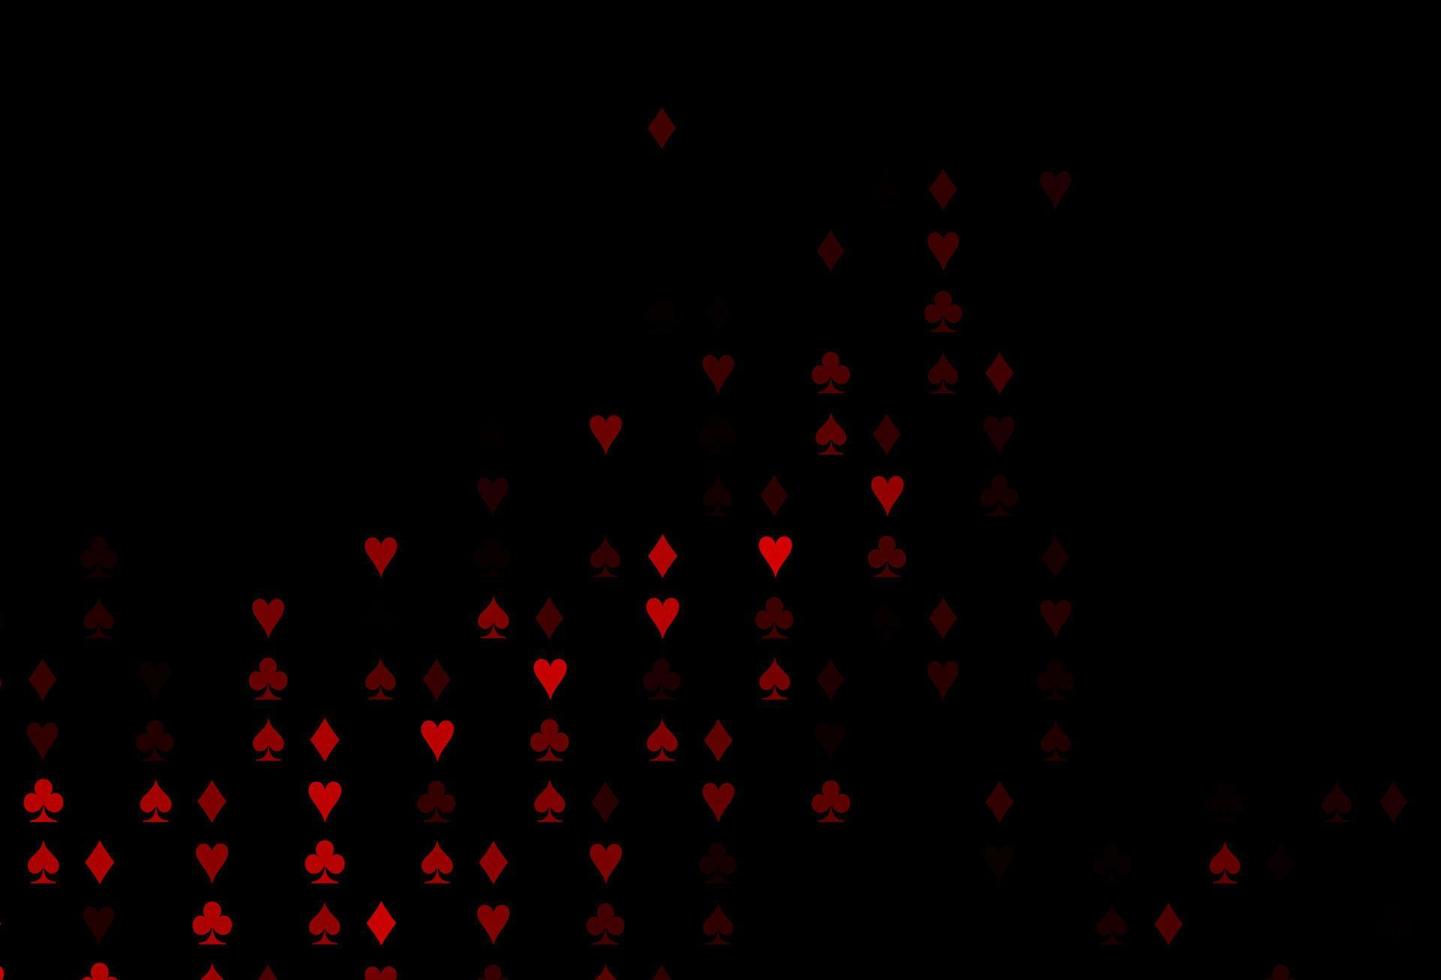 cubierta de vector rojo oscuro con símbolos de apuesta.